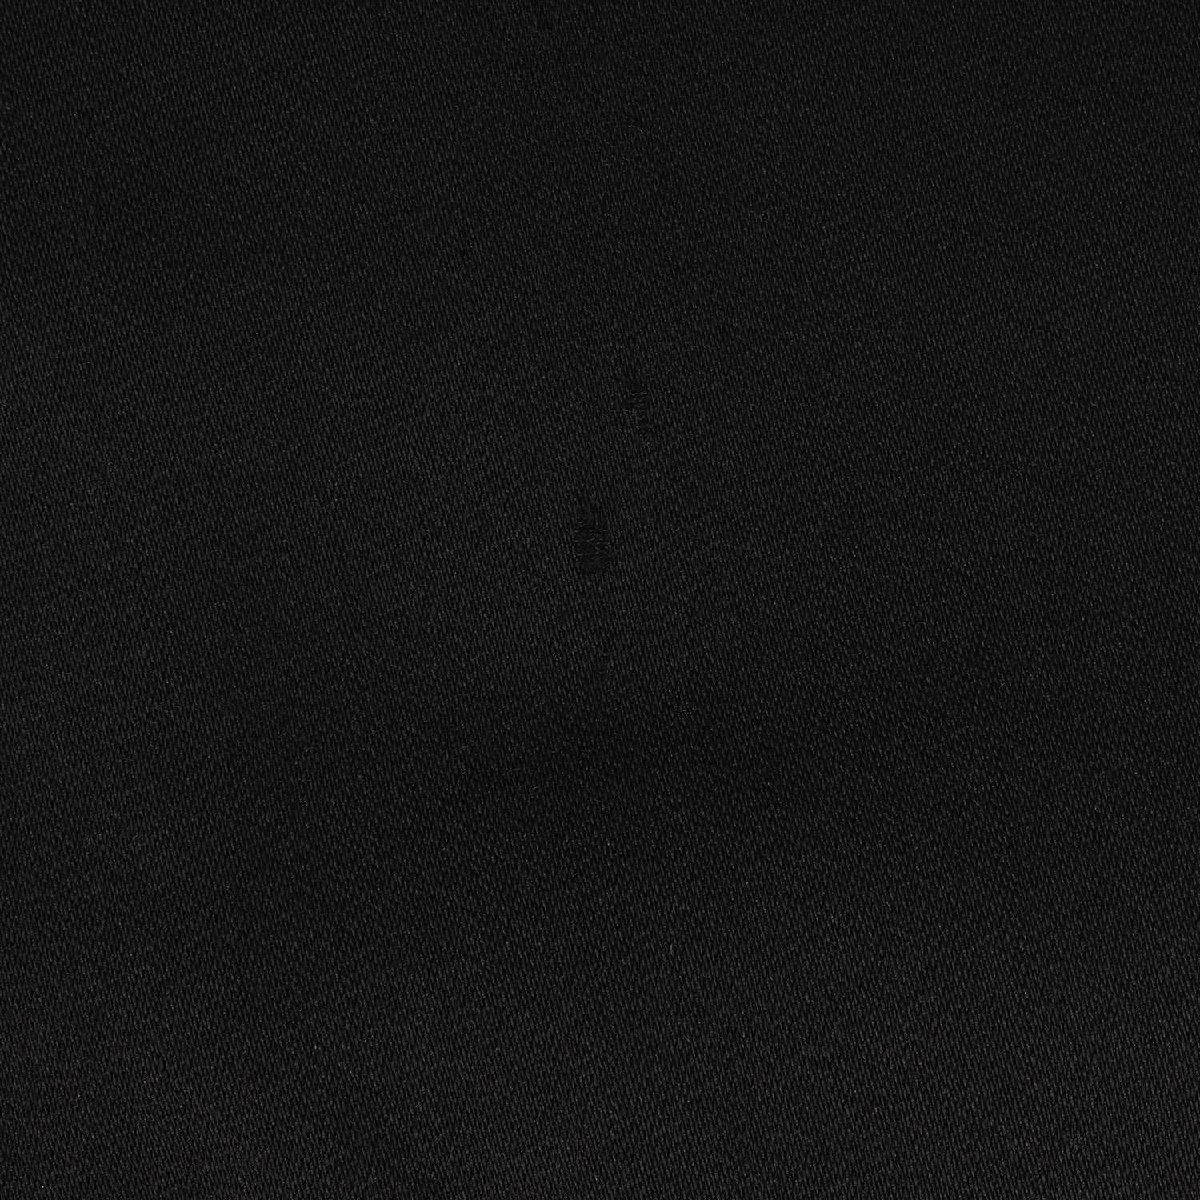 Allegri アレグリ コート サイズ:46 ウール パテッド ステンカラー コート バルマカーン 中わた ビジネス フォーマル ブラック 黒_画像6